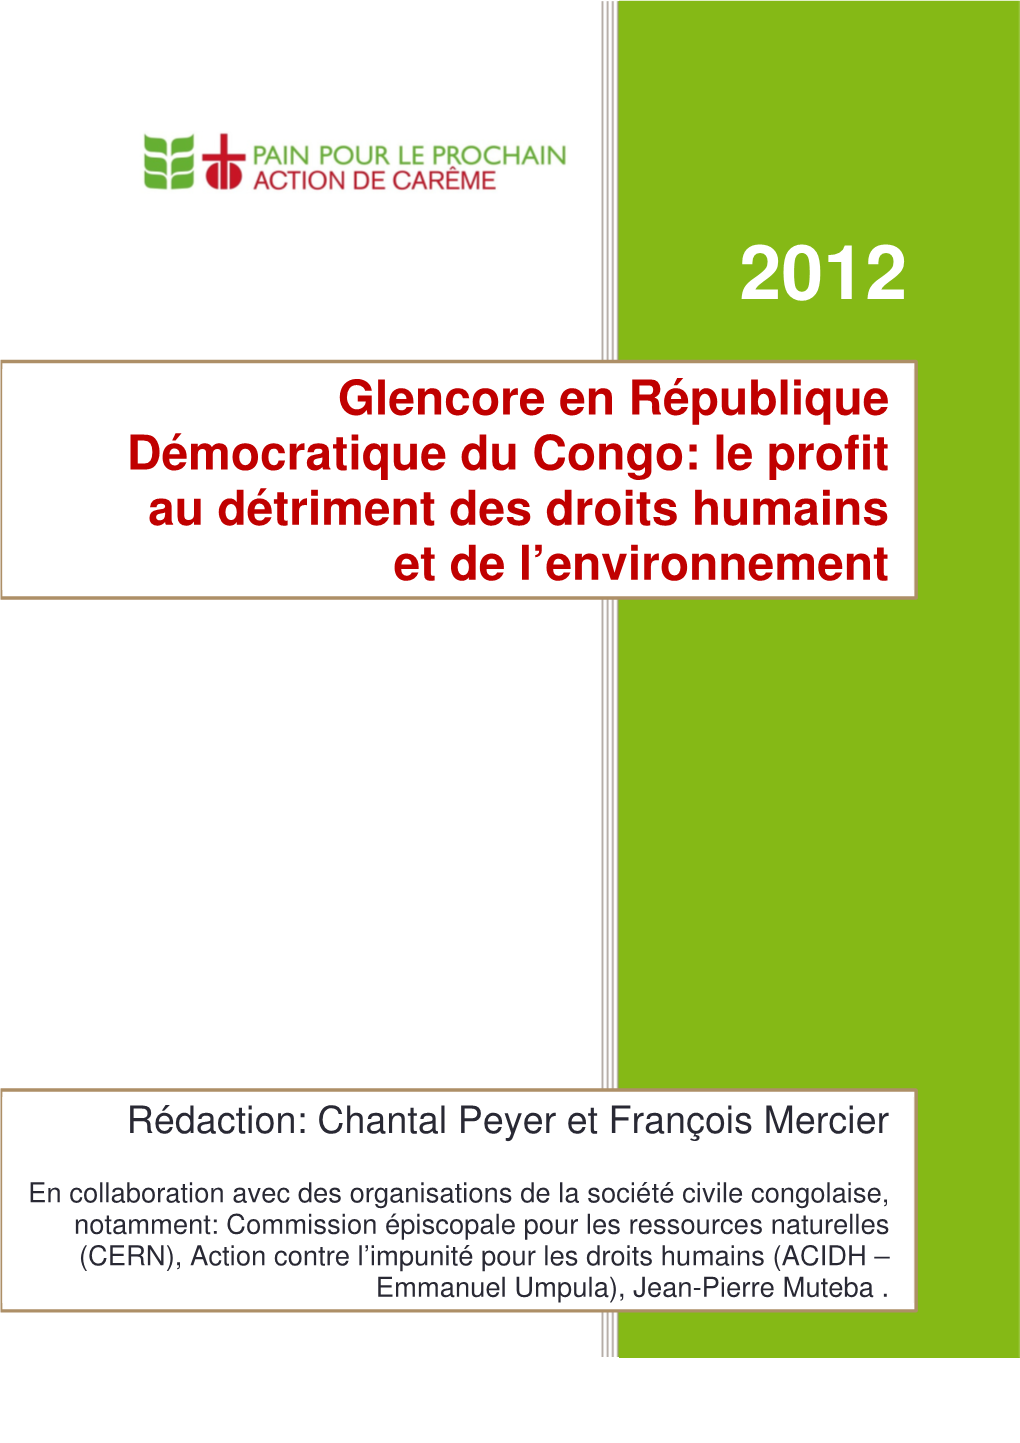 Glencore En République Démocratique Du Congo: Le Profit Au Détriment Des Droits Humains Et De L’Environnement